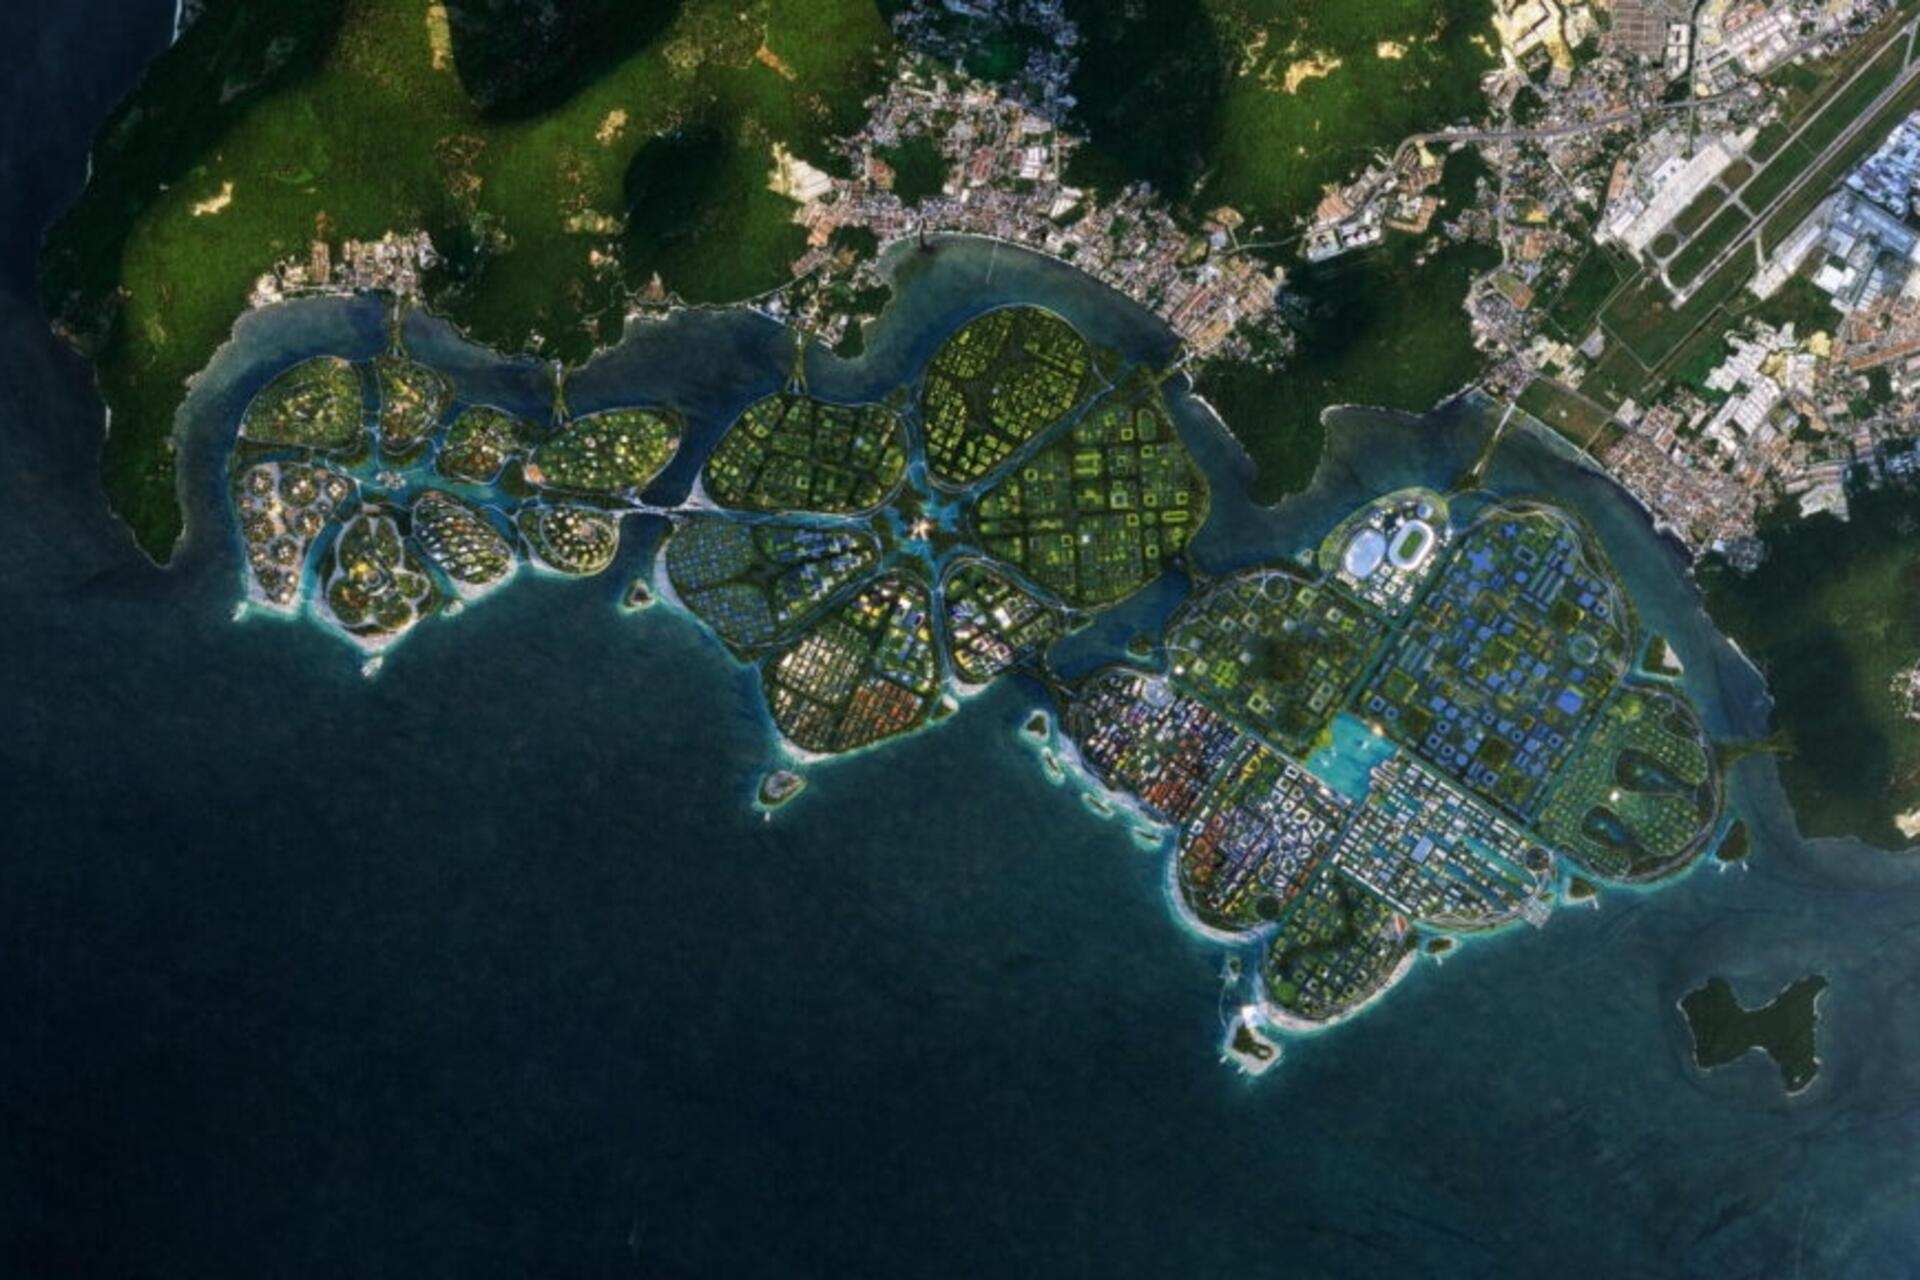 BiodiverCity: o redare aeriană a celor trei insule The Channels, The Mangroves și The Lagoon, care va forma orașul inovator și durabil BiodiverCity în 2030 în Malaezia, lângă Penang